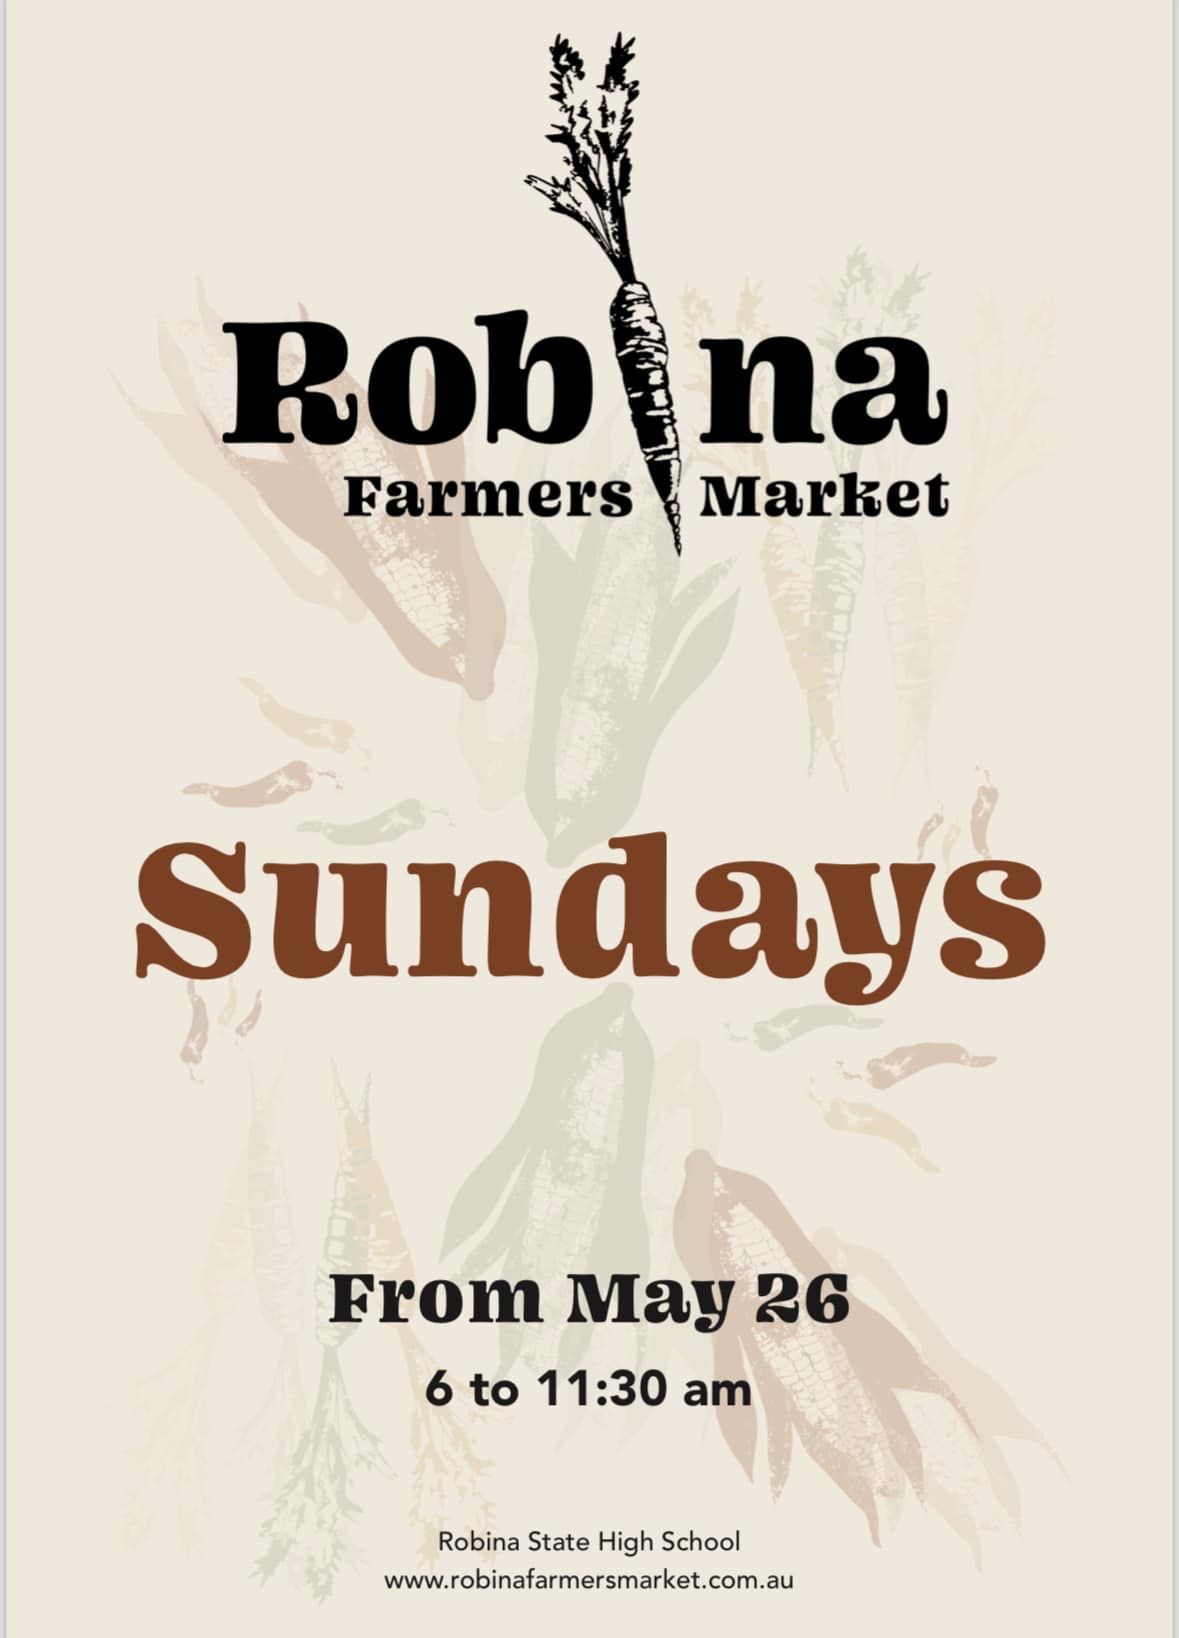 ROBINA FARMERS MARKET 1st MARKET